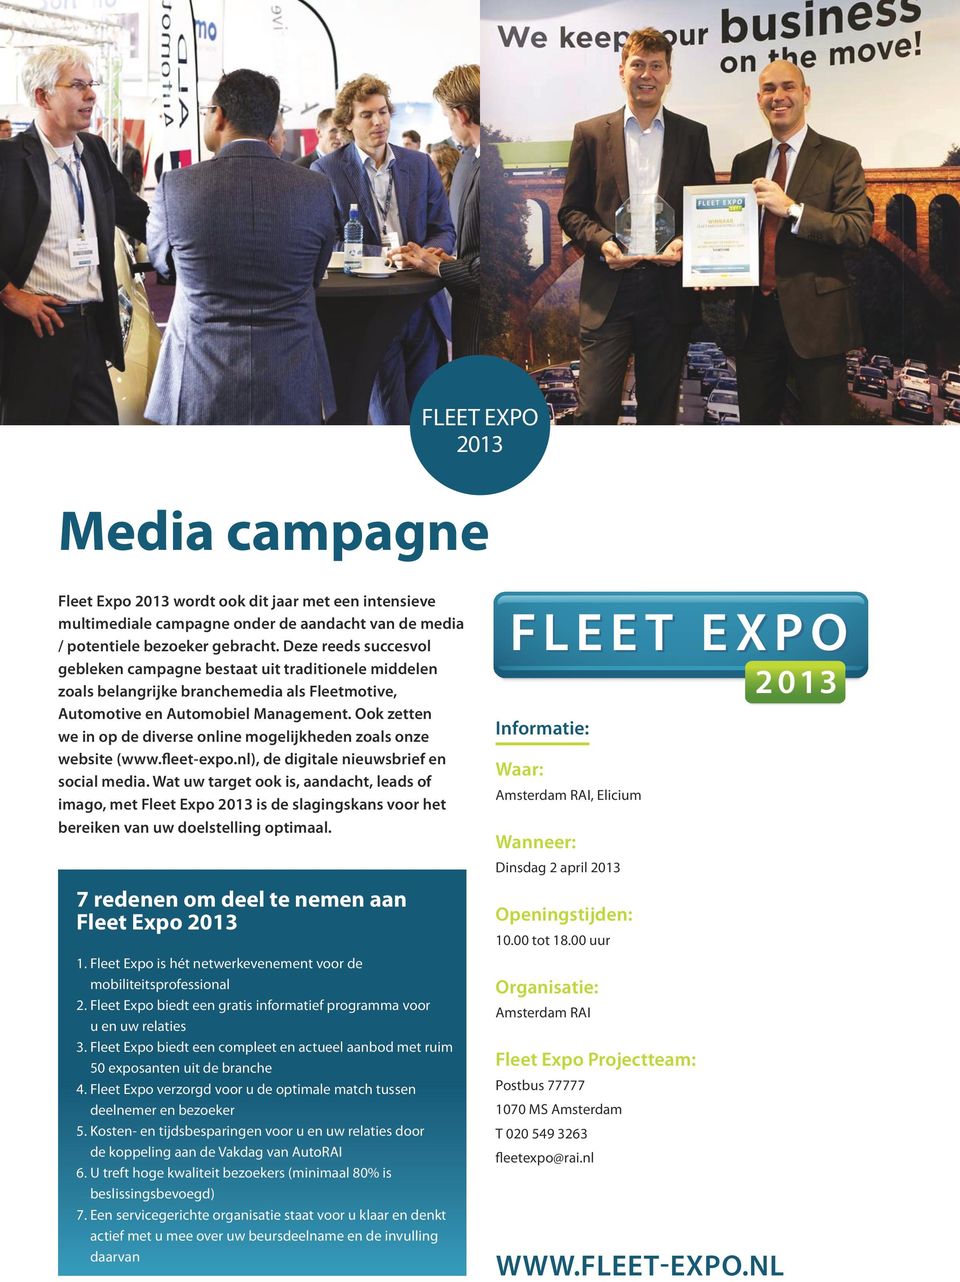 Ook zetten we in op de diverse online mogelijkheden zoals onze website (www.fleet-expo.nl), de digitale nieuwsbrief en social media.